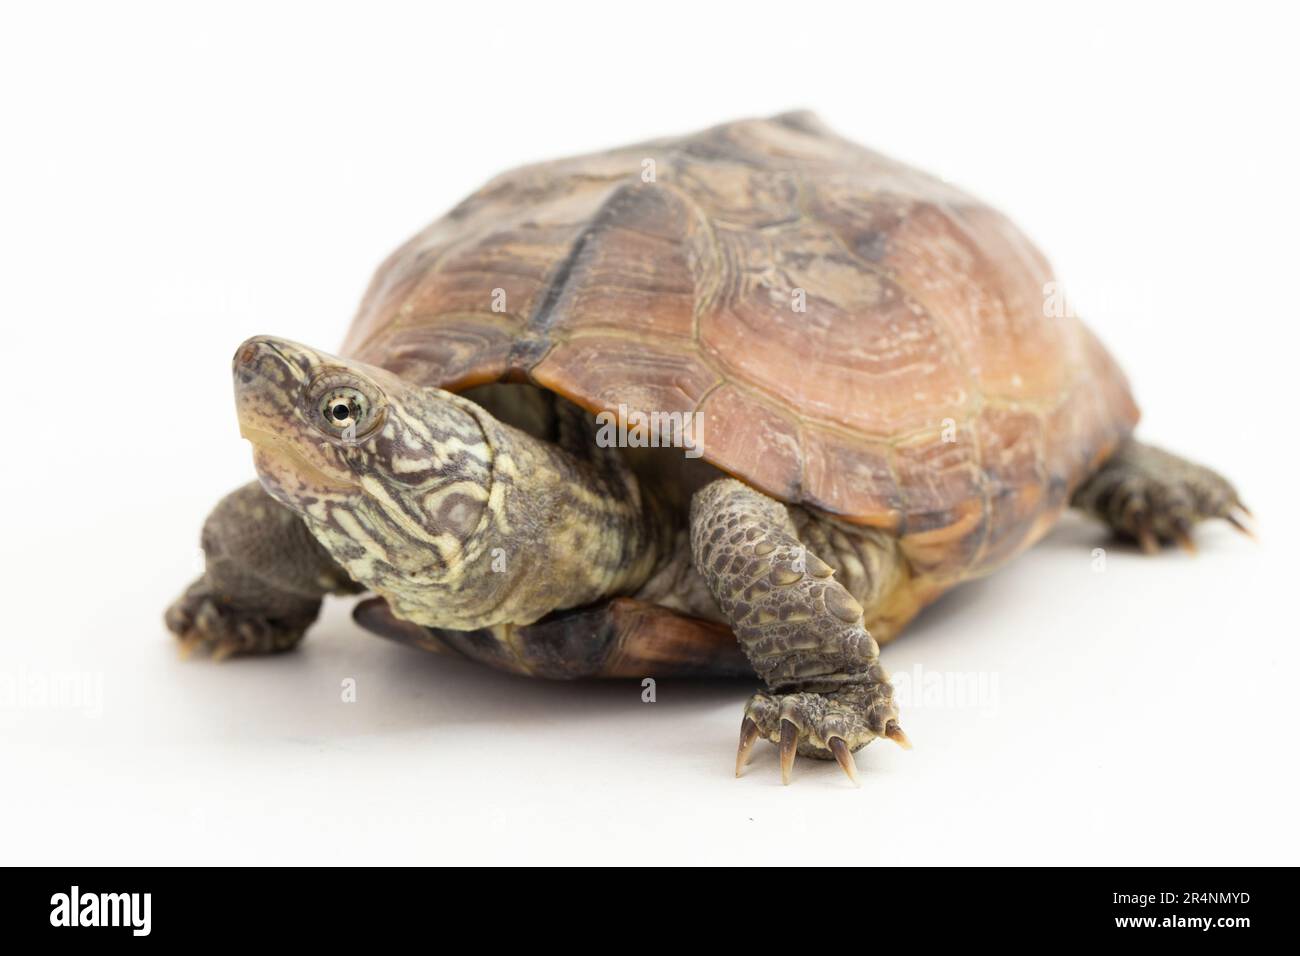 The razor-backed musk turtle (Sternotherus carinatus) isolated on white background Stock Photo